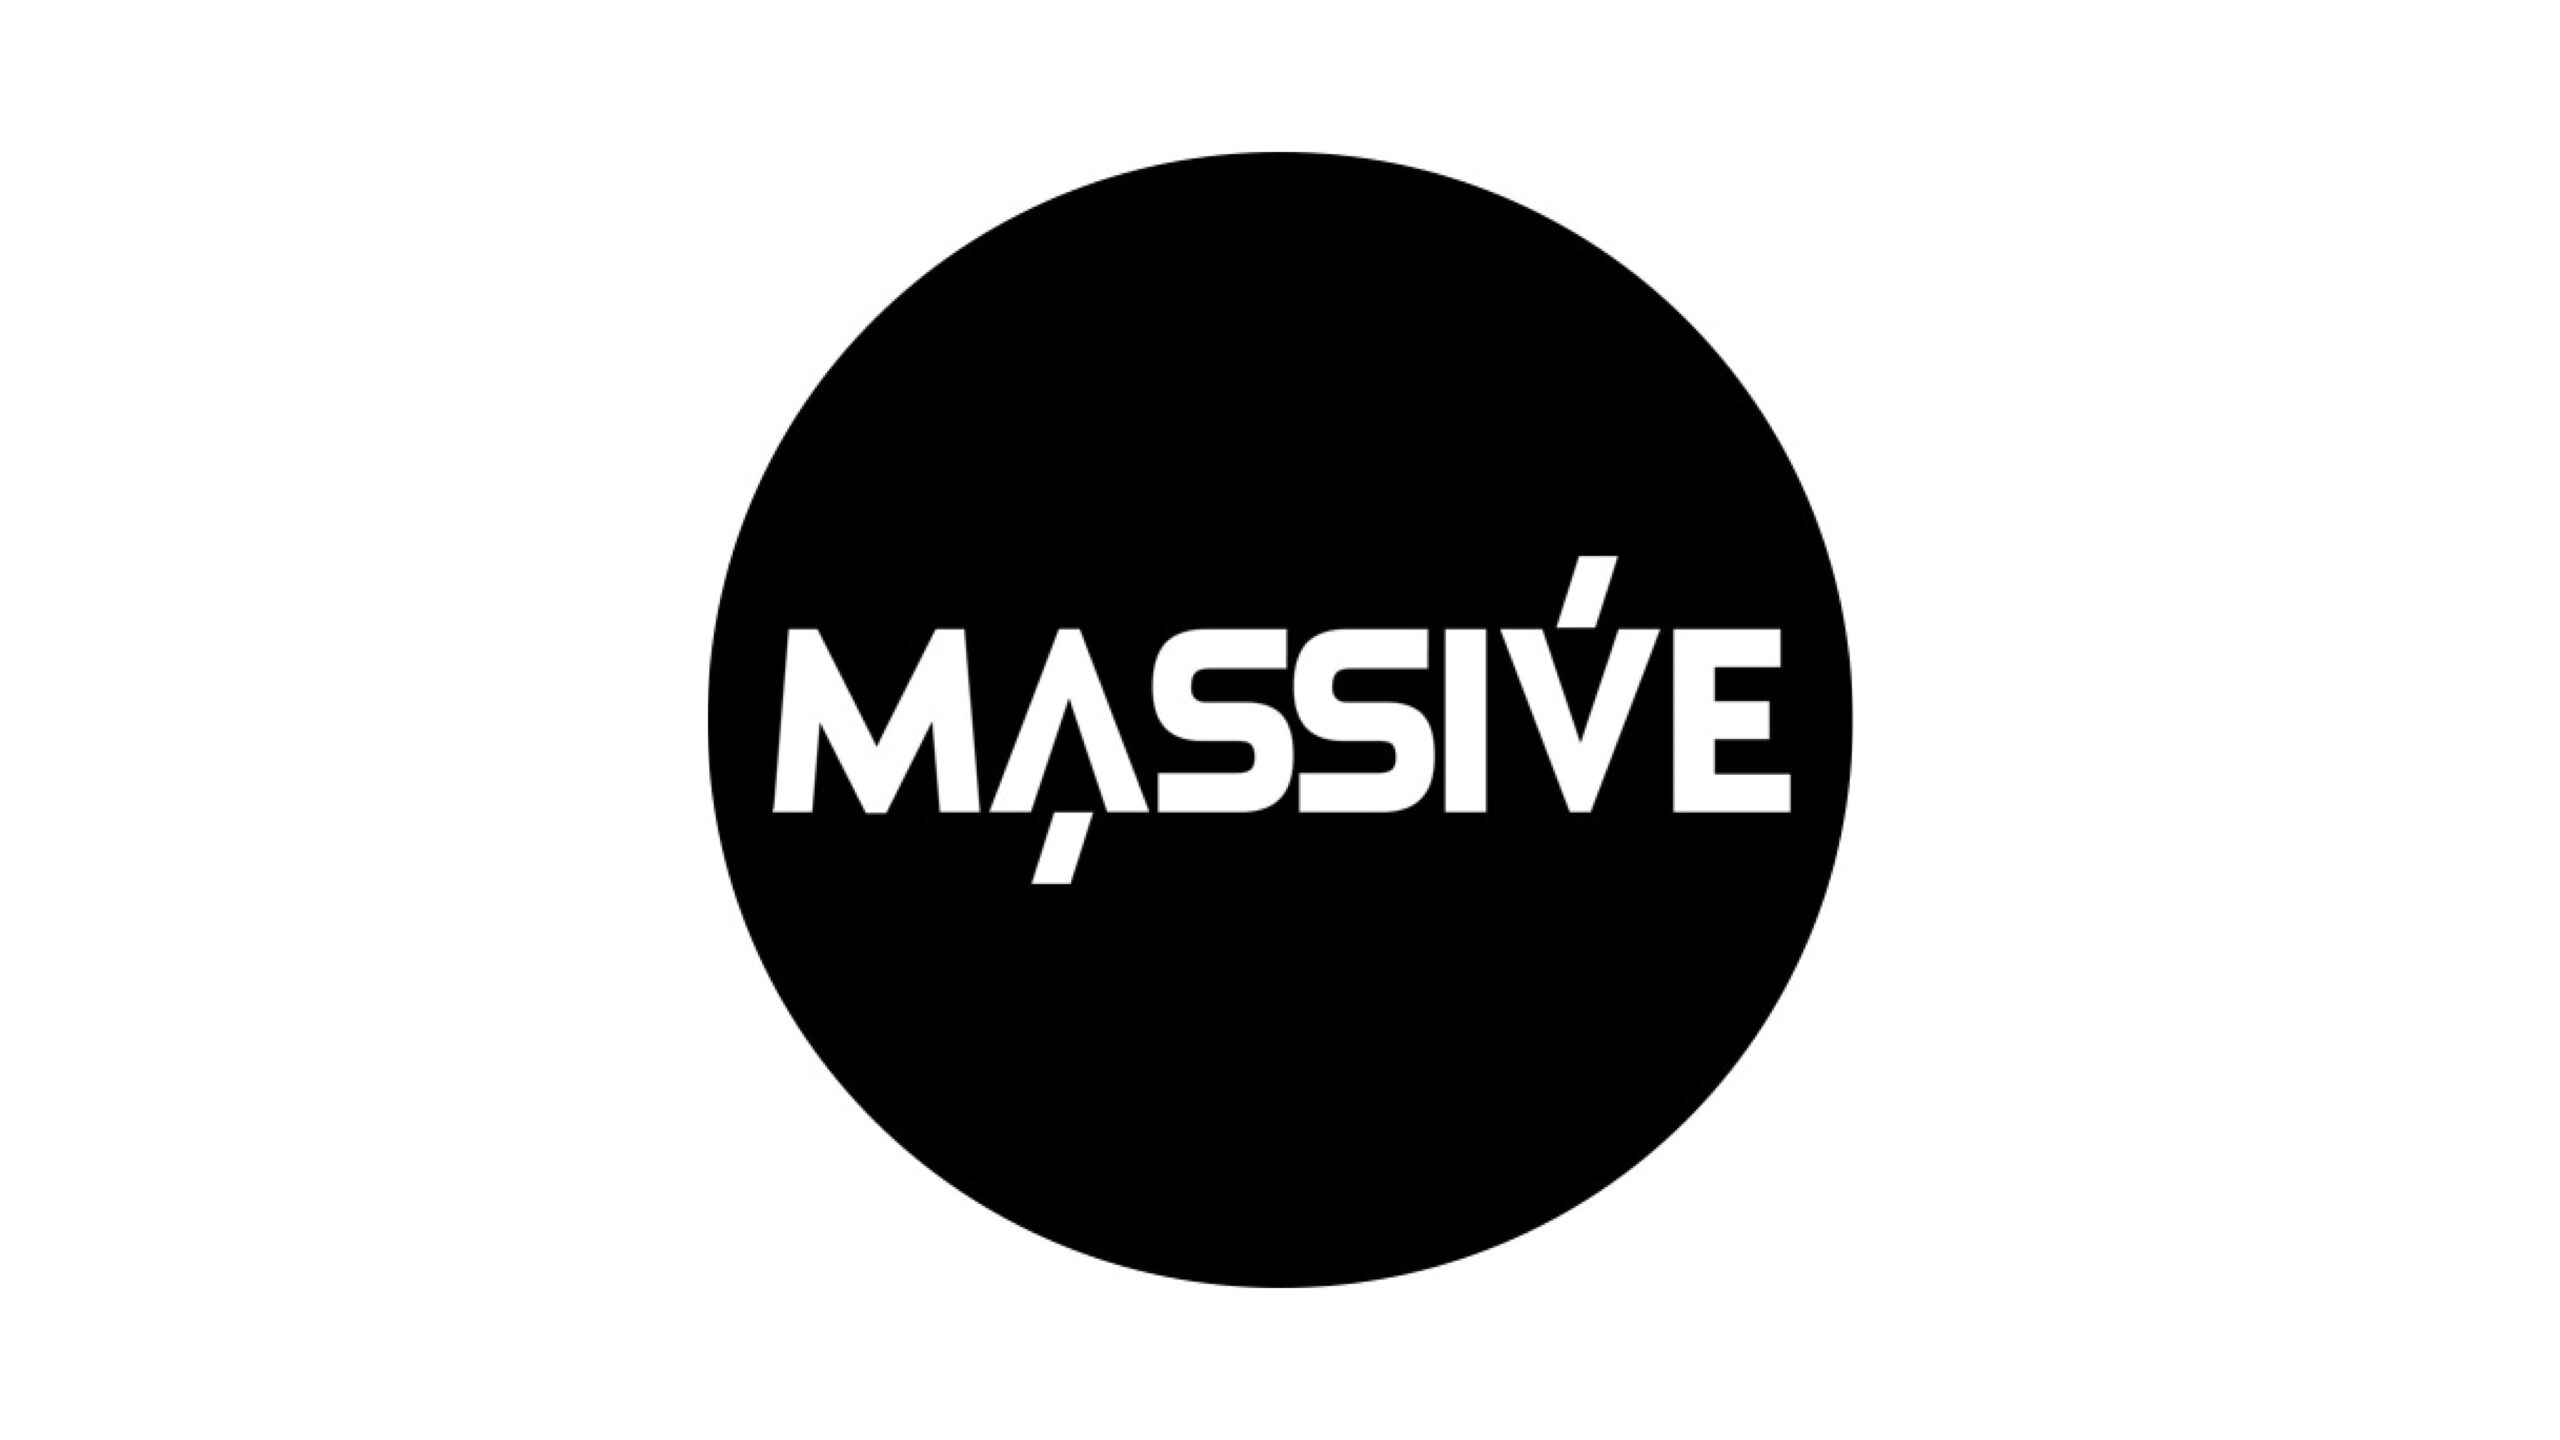 新世代の無料スマートフォンゲーム『MASSIVE WORLD』を開発するSuper Massive Global株式会社が7.5億円の資金調達